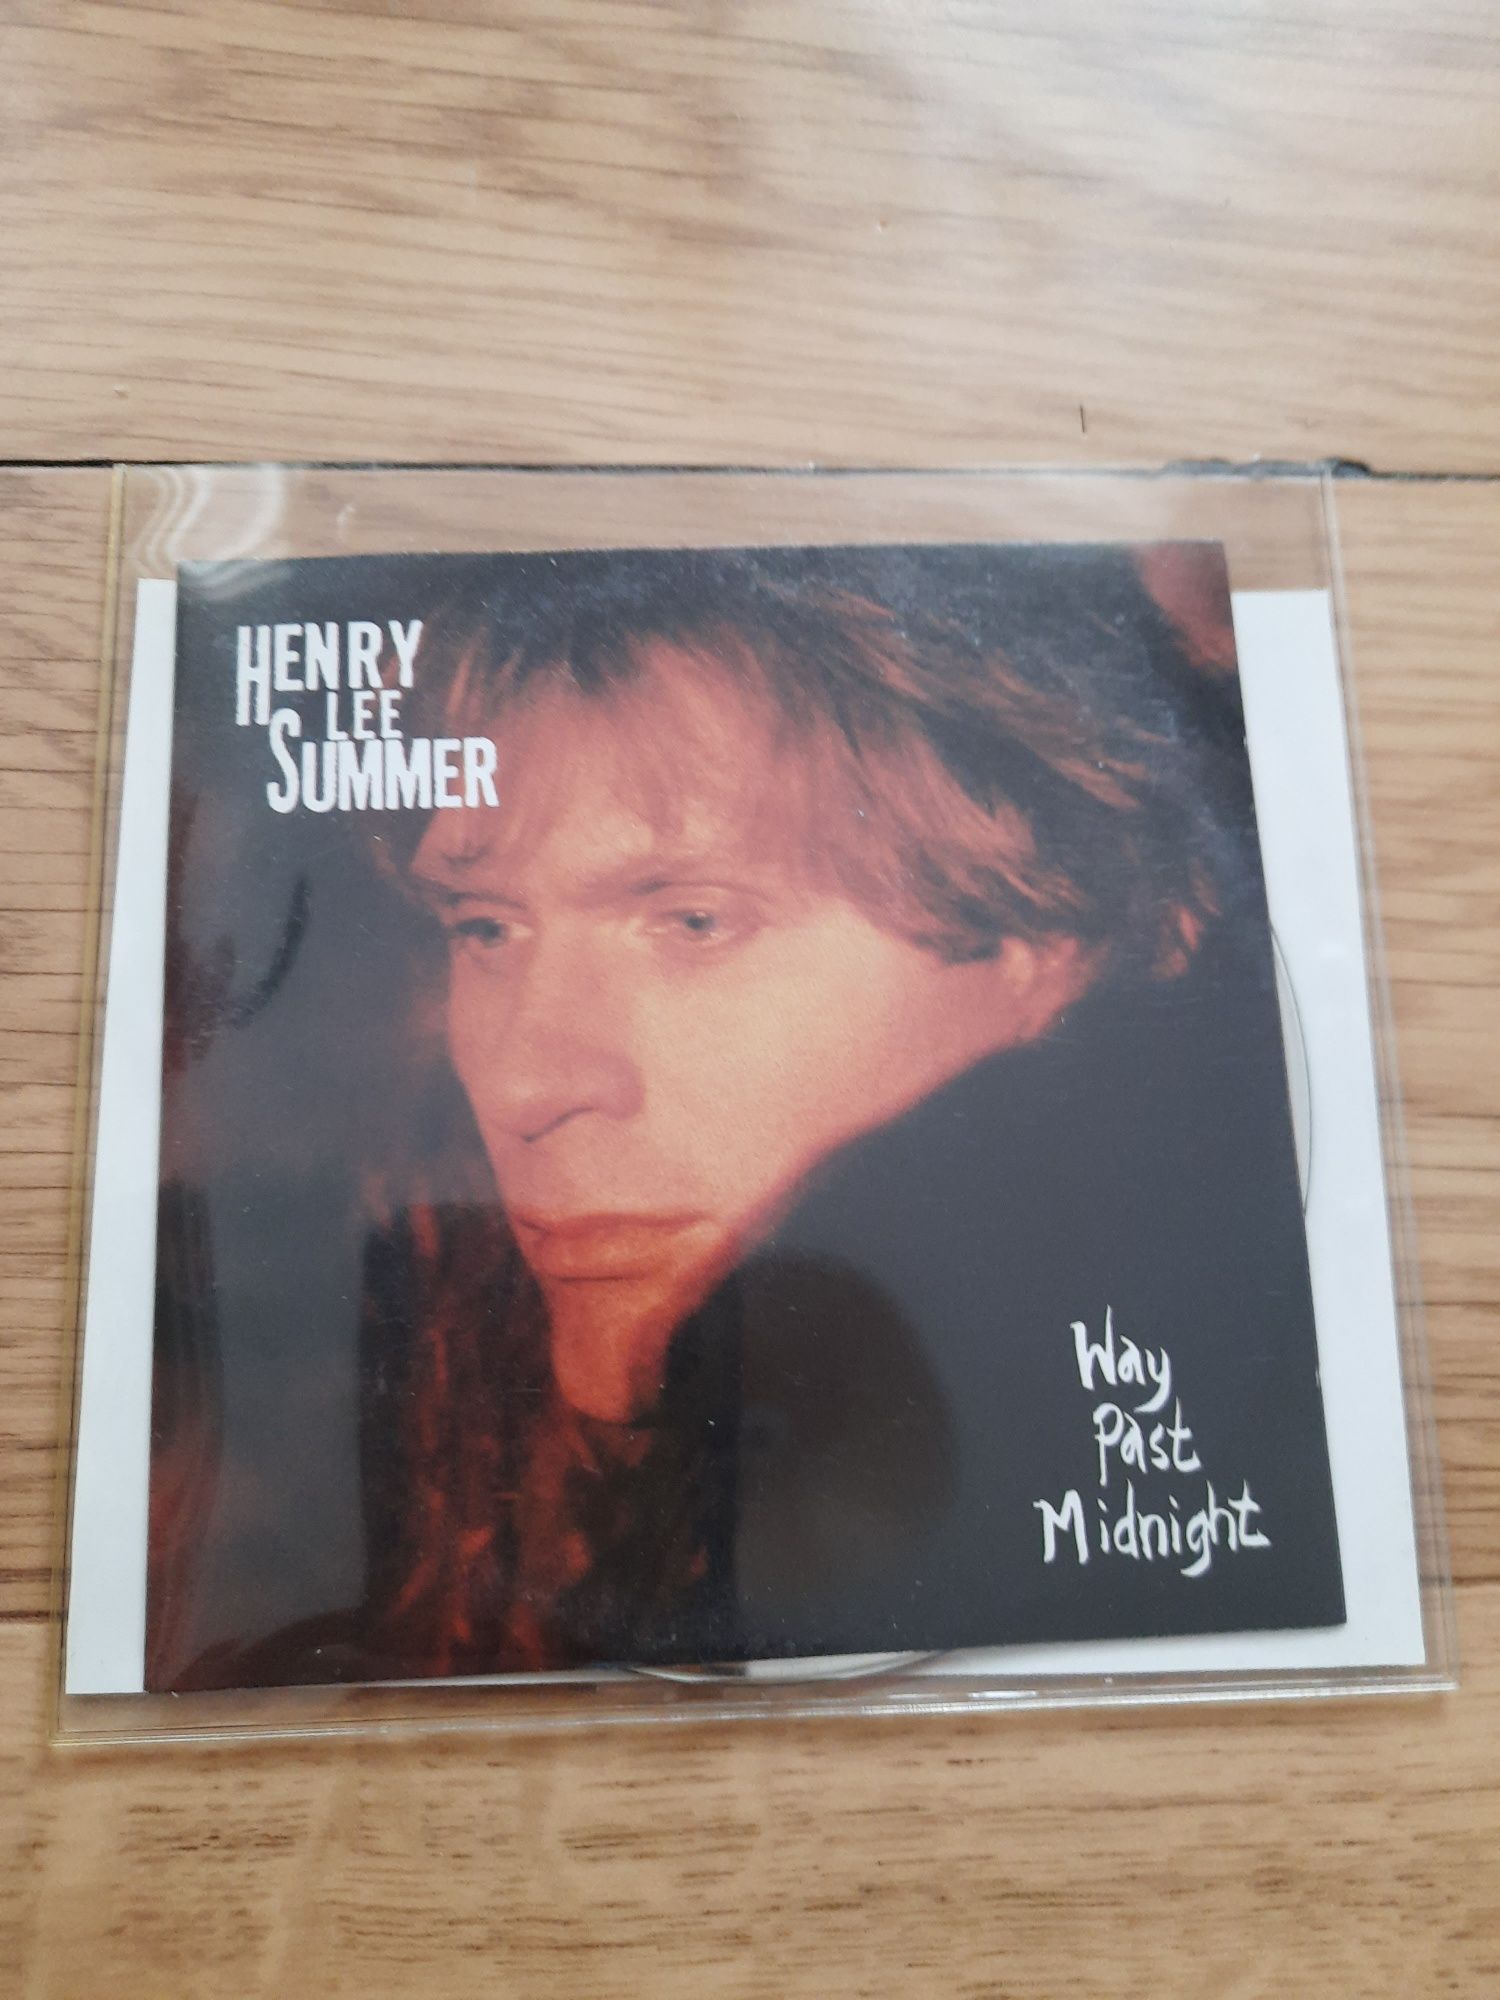 Henry Lee Summer "Way Past Midnight"